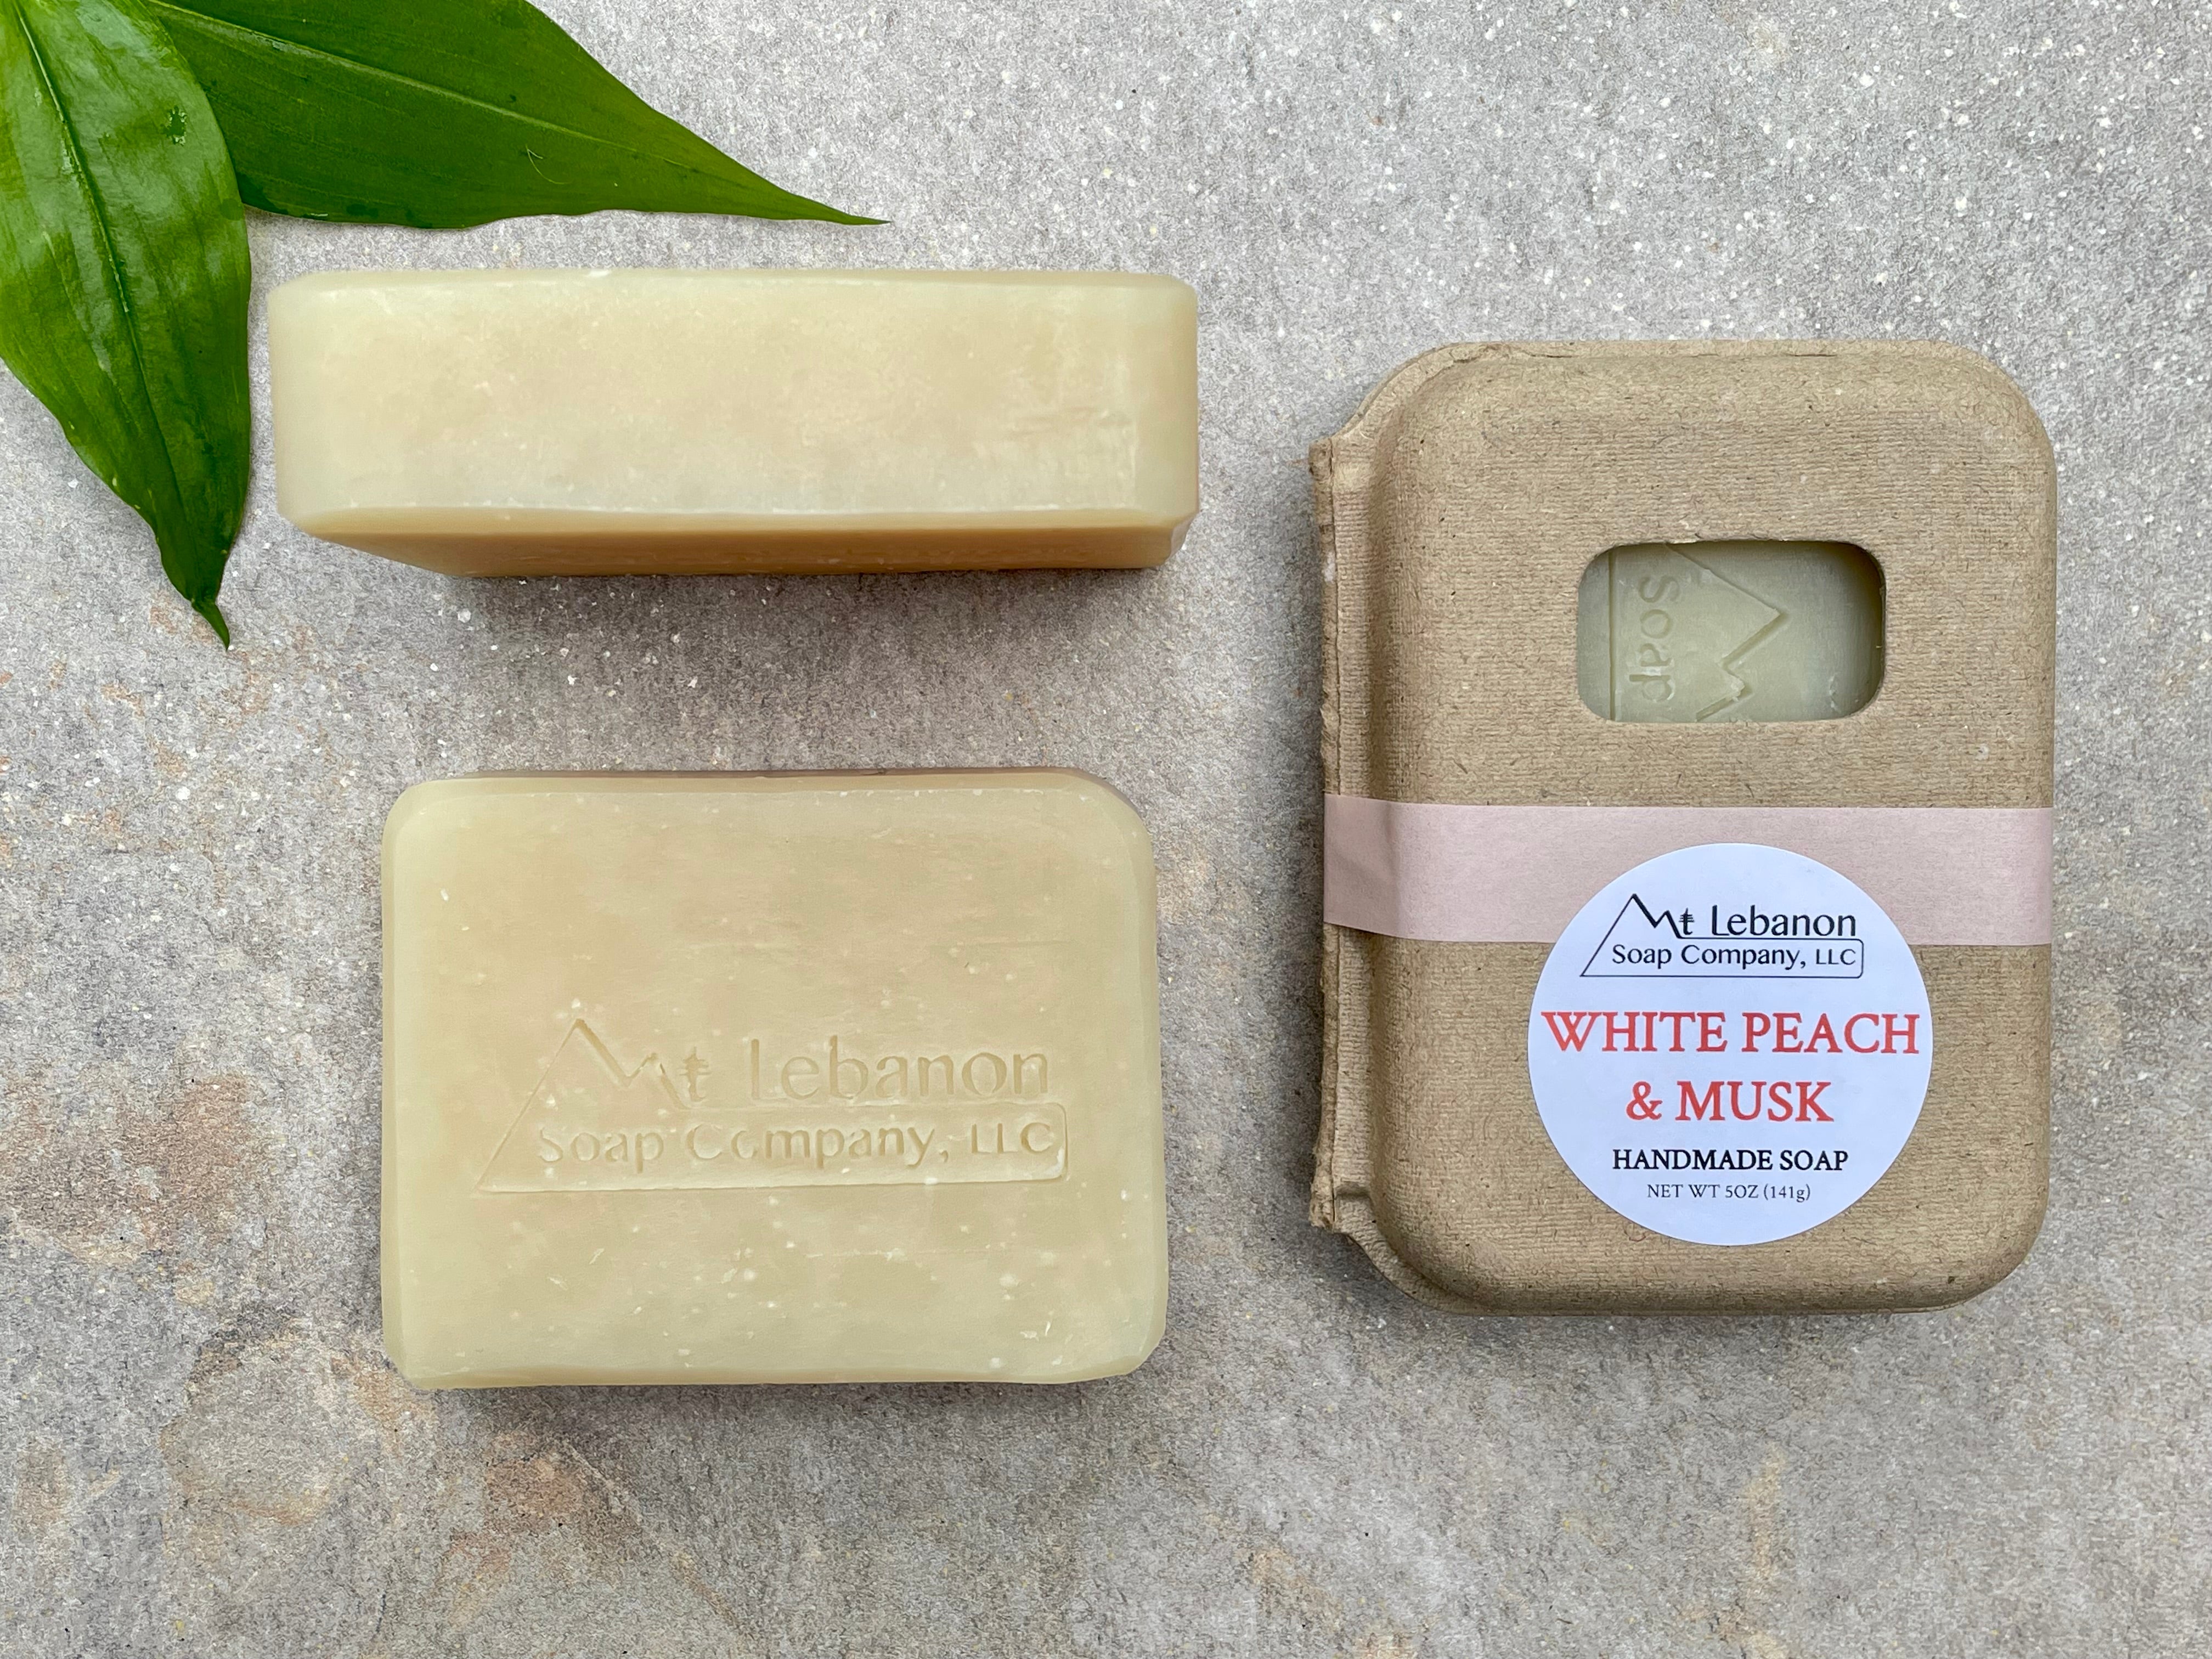 White Peach & Musk Soap